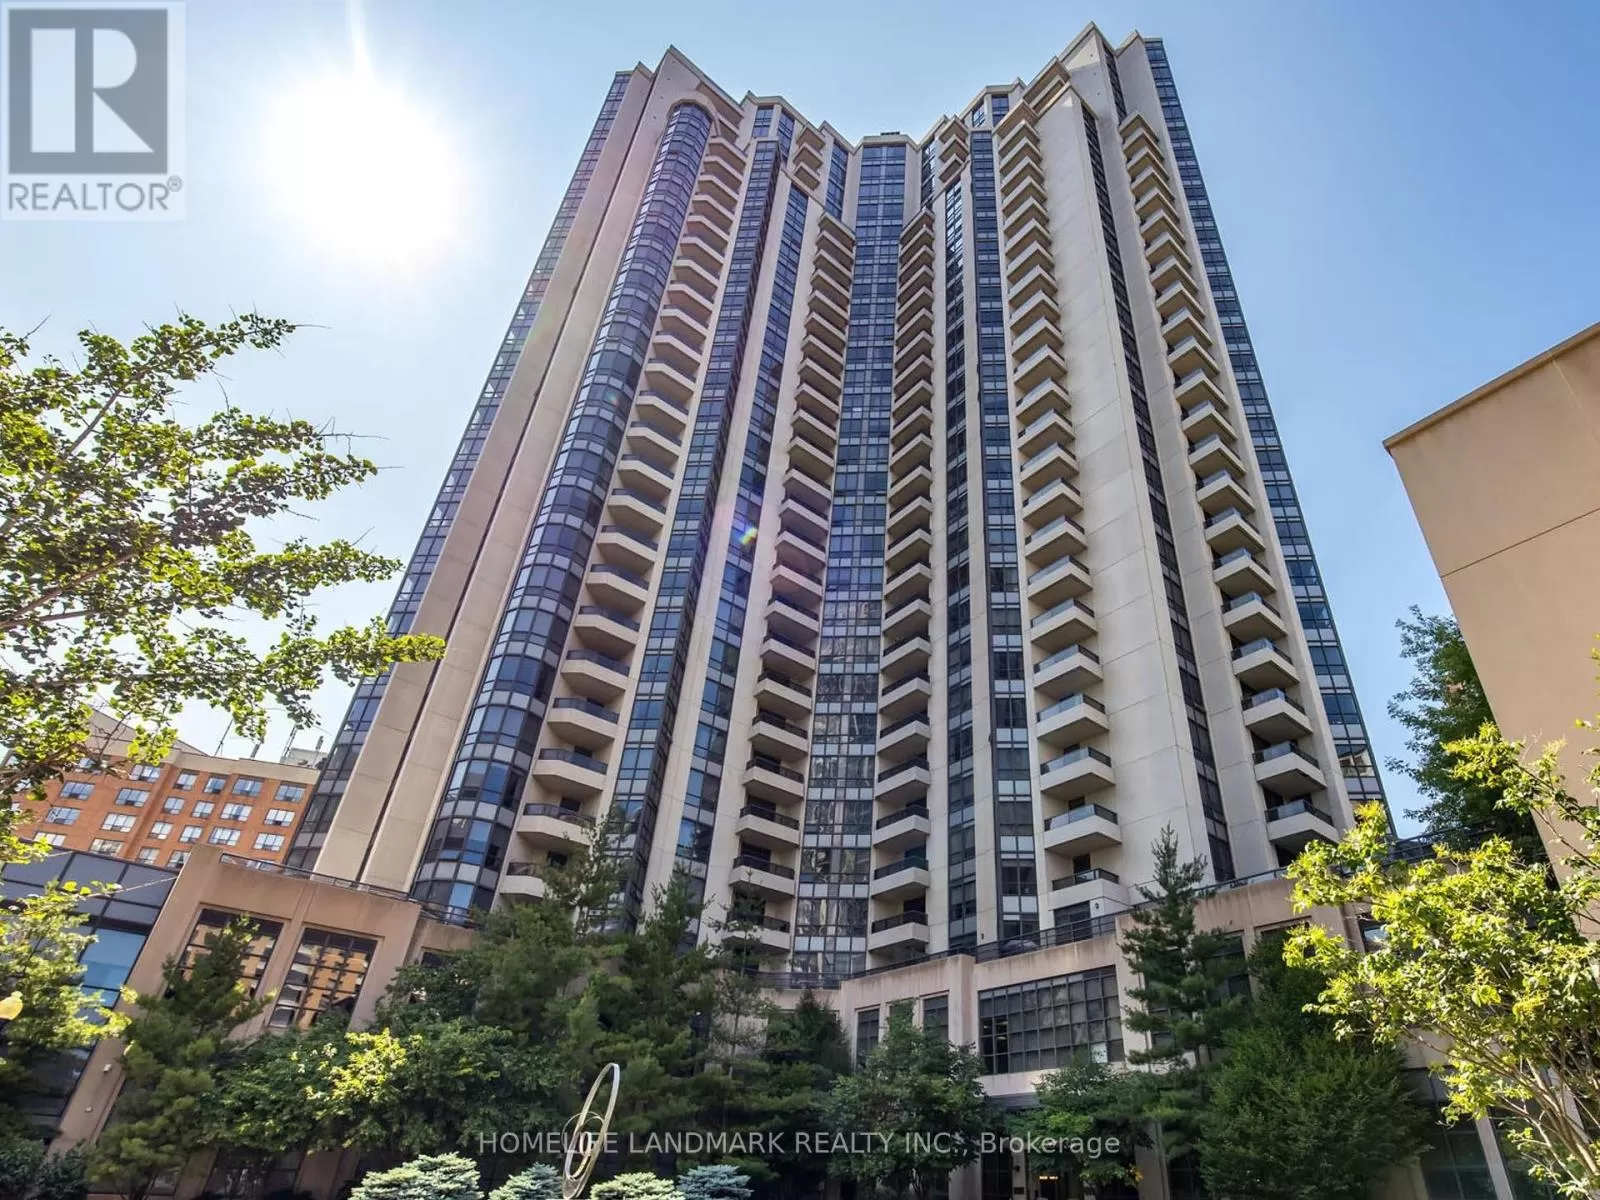 Apartment for rent: 1323 - 500 Doris Avenue, Toronto, Ontario M2N 0C1